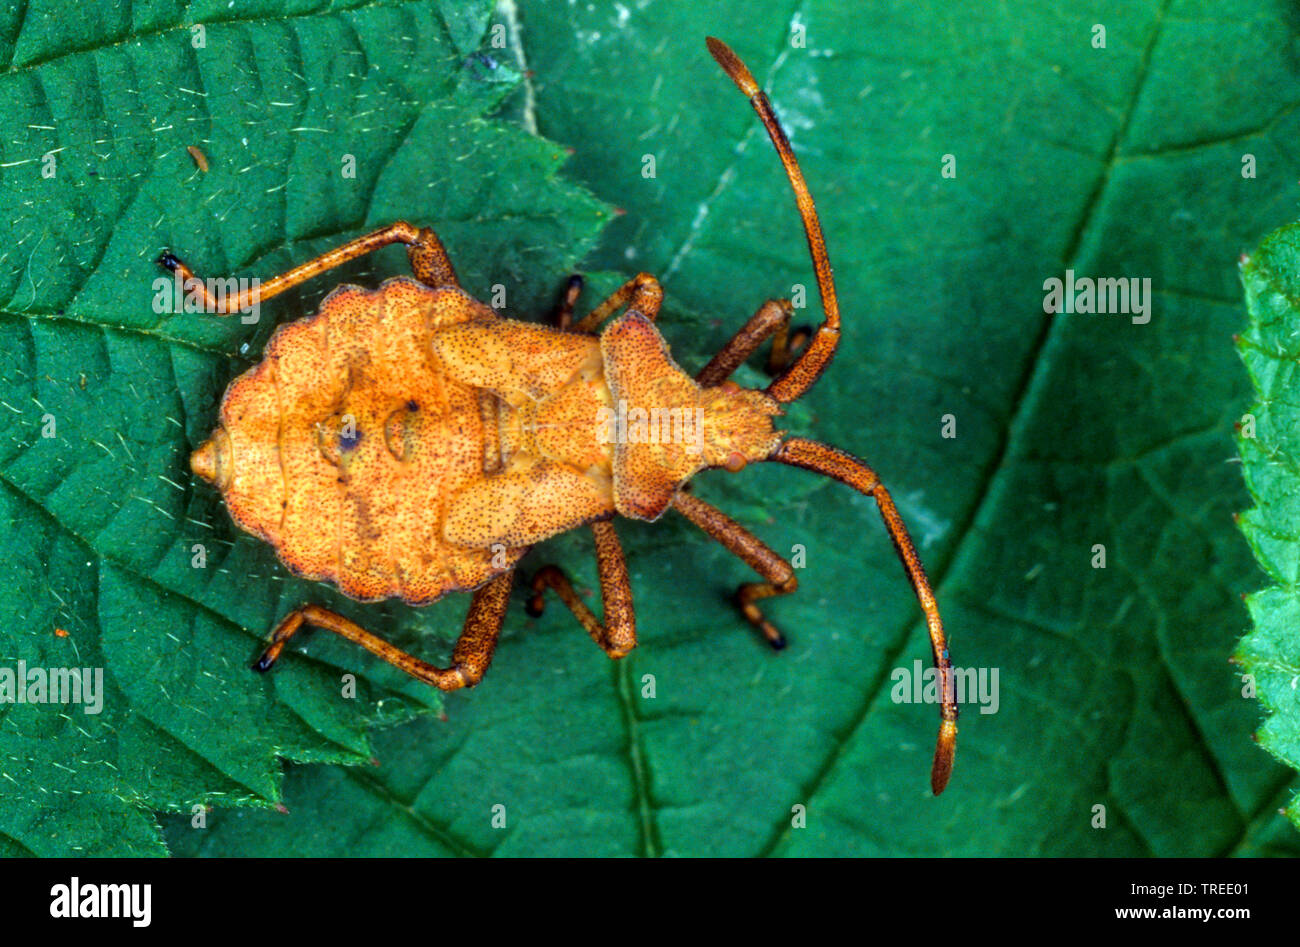 Squash bug (Coreus marginatus, Mesocerus marginatus), nymphe, Allemagne Banque D'Images